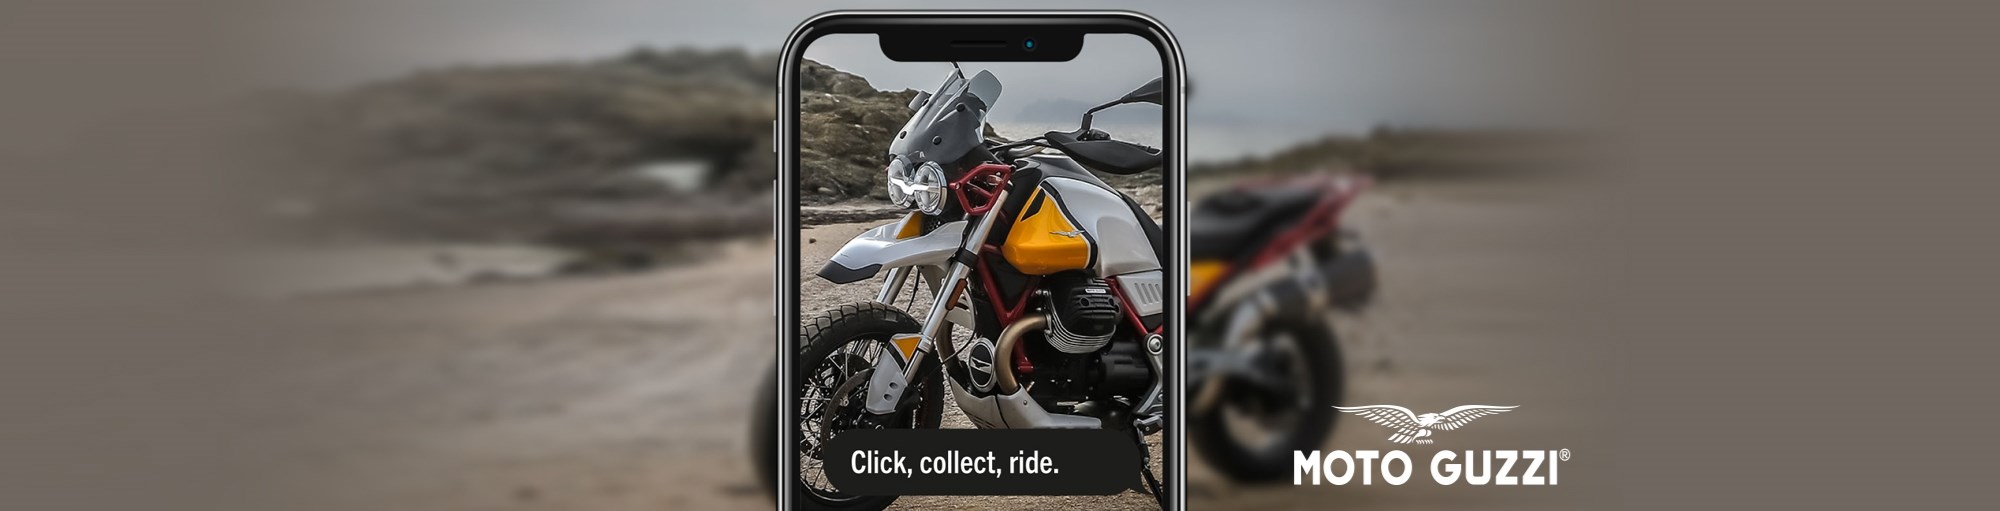 Moto Guzzi Click and Collect